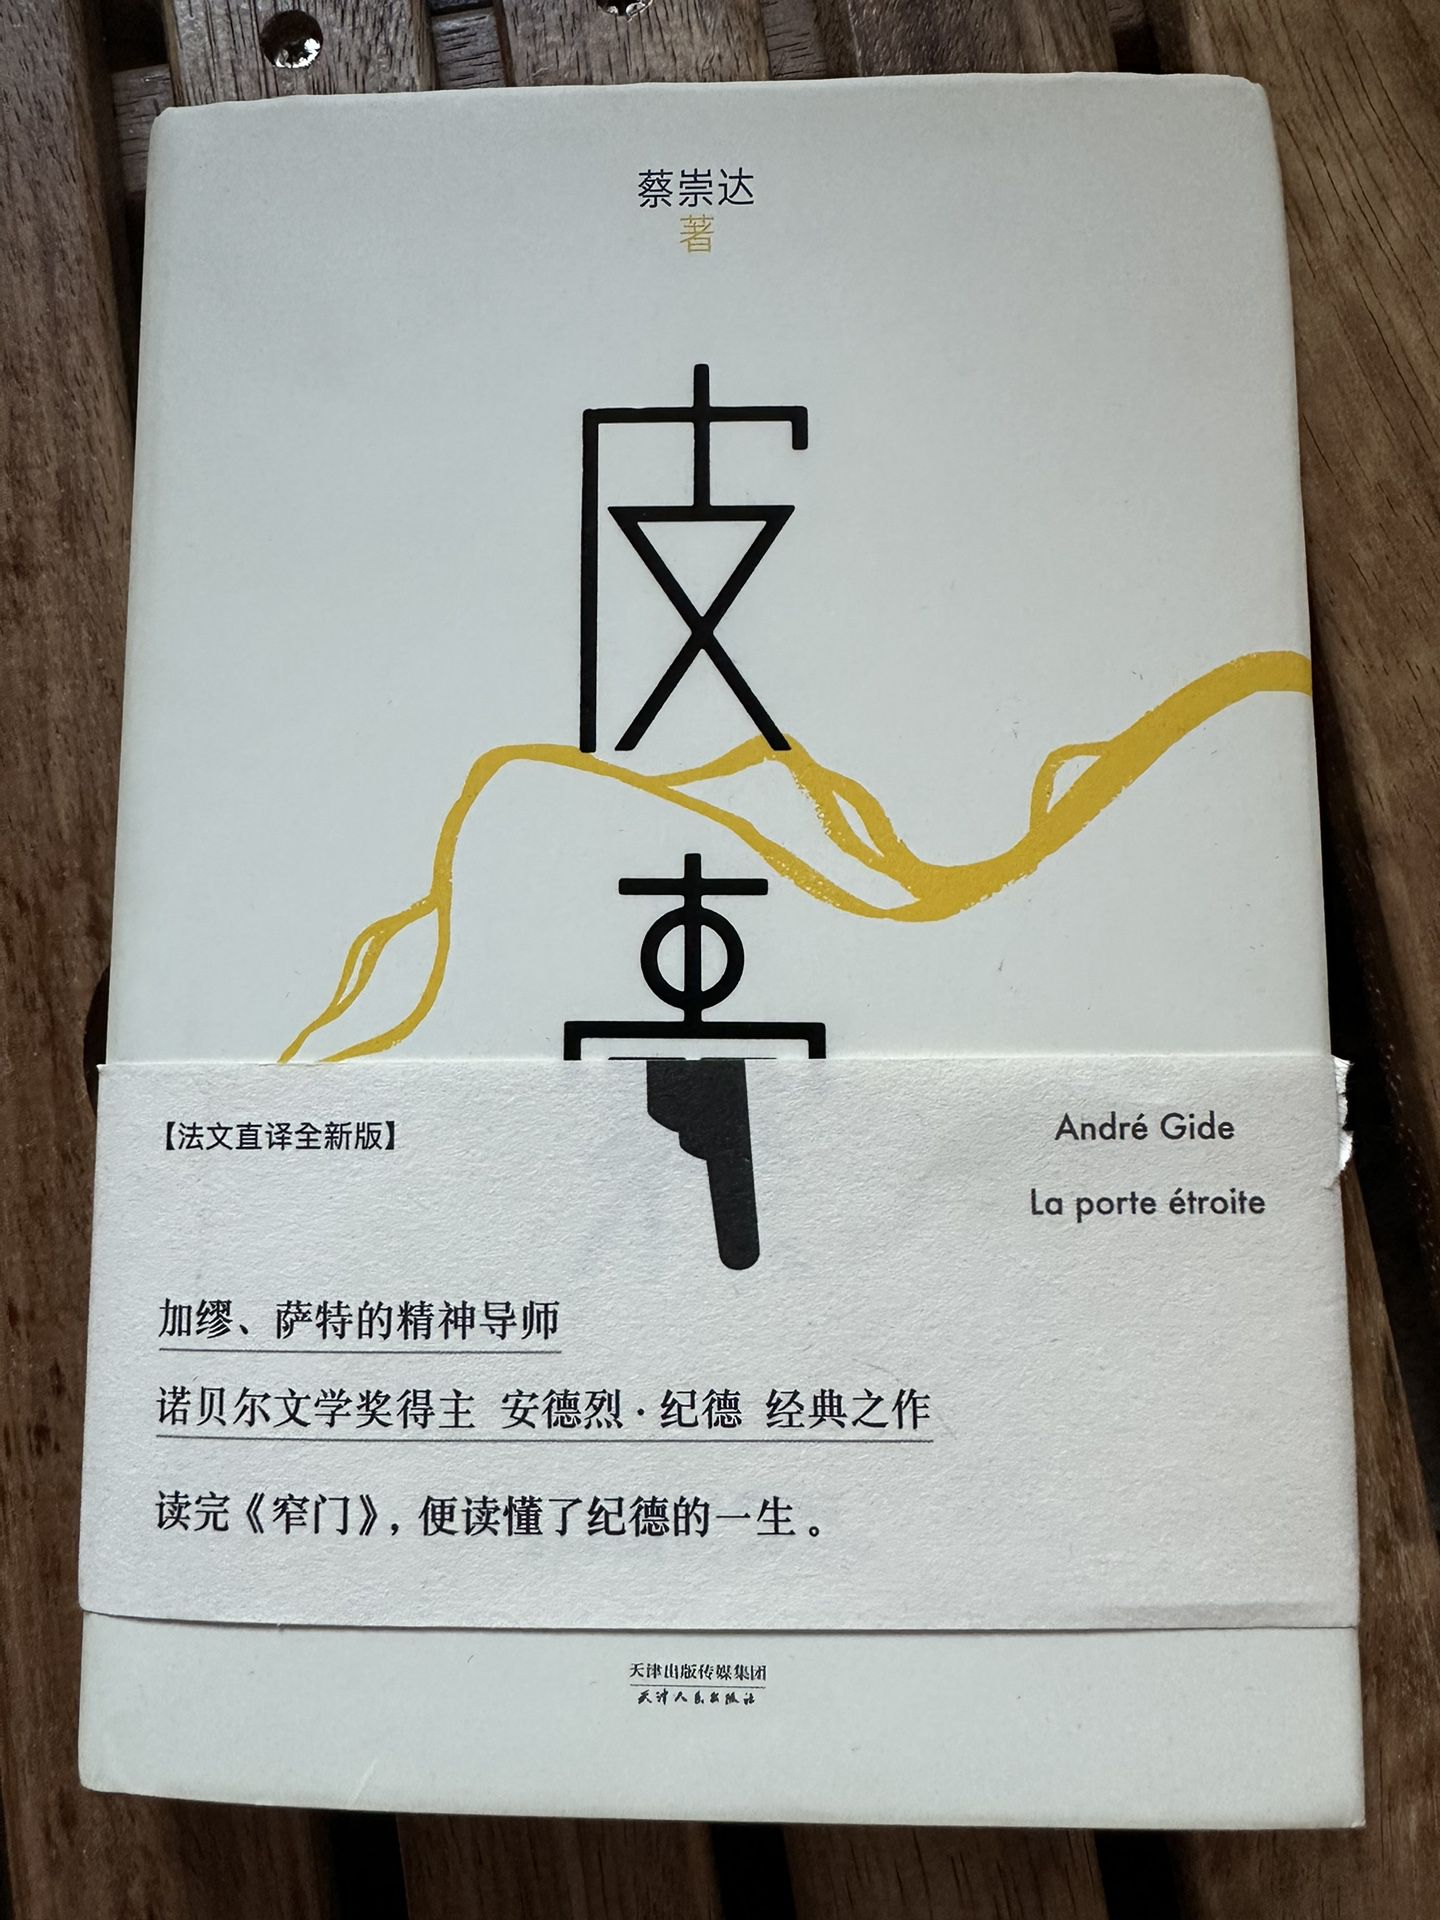 中文书 皮囊 蔡崇达 Chinese Book